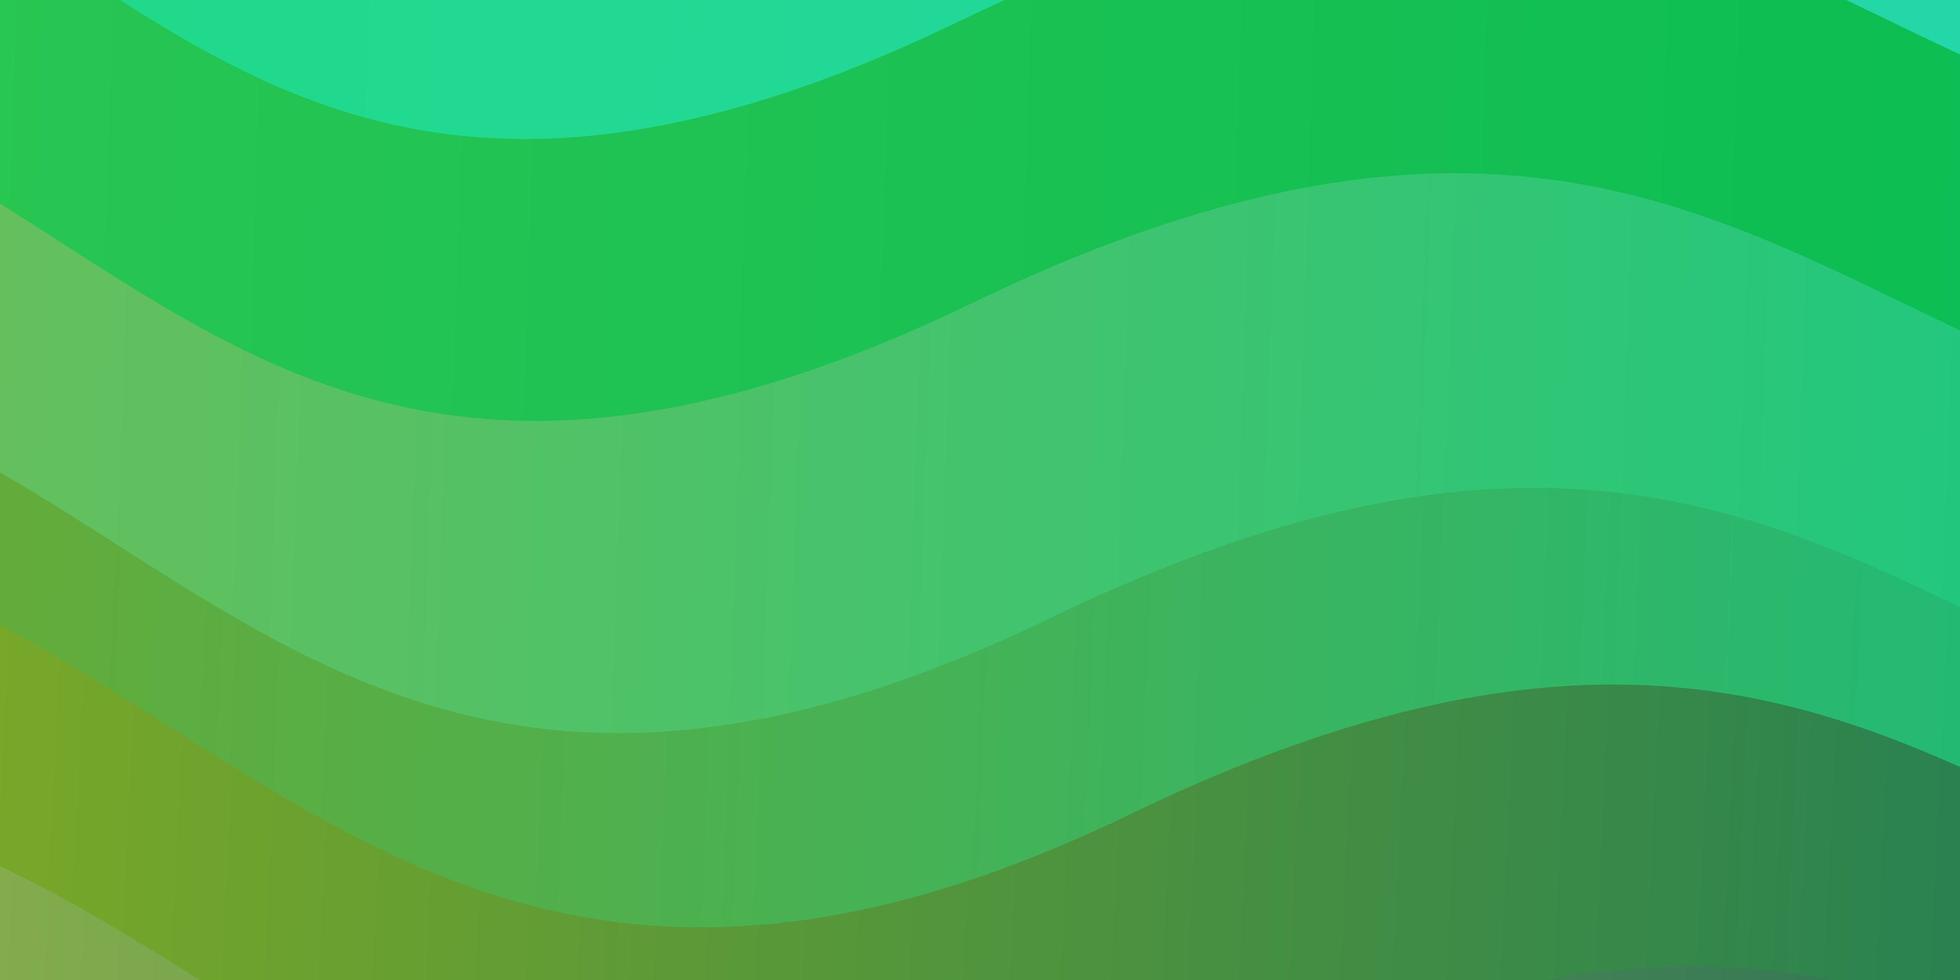 sfondo vettoriale verde chiaro con linee curve.